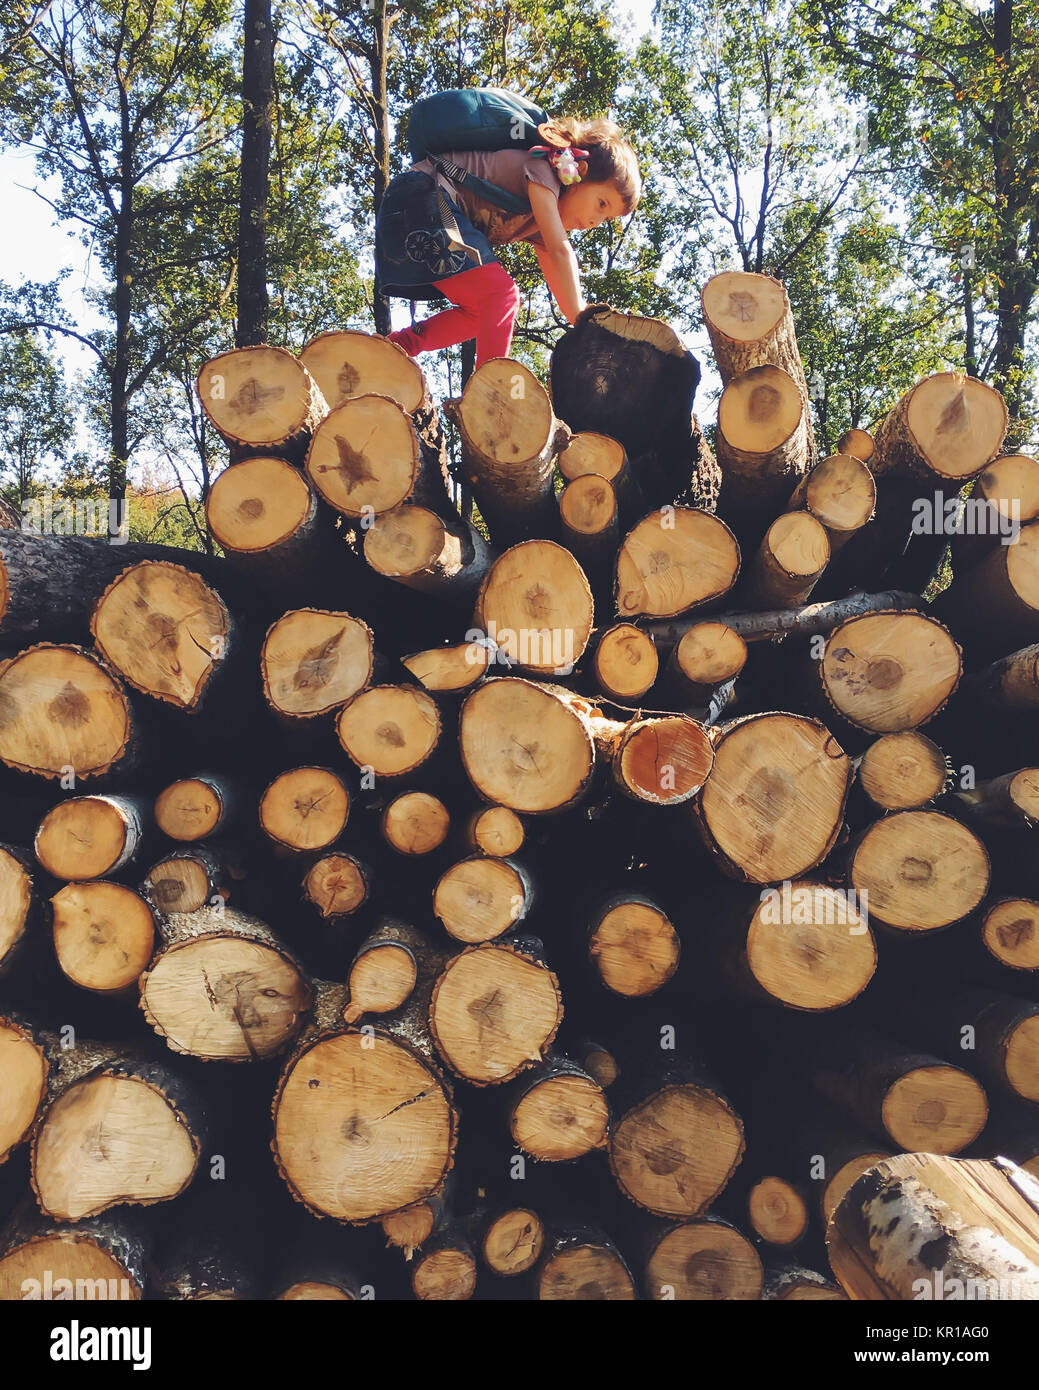 Girl climbing sur un tas de bois de chauffage Banque D'Images